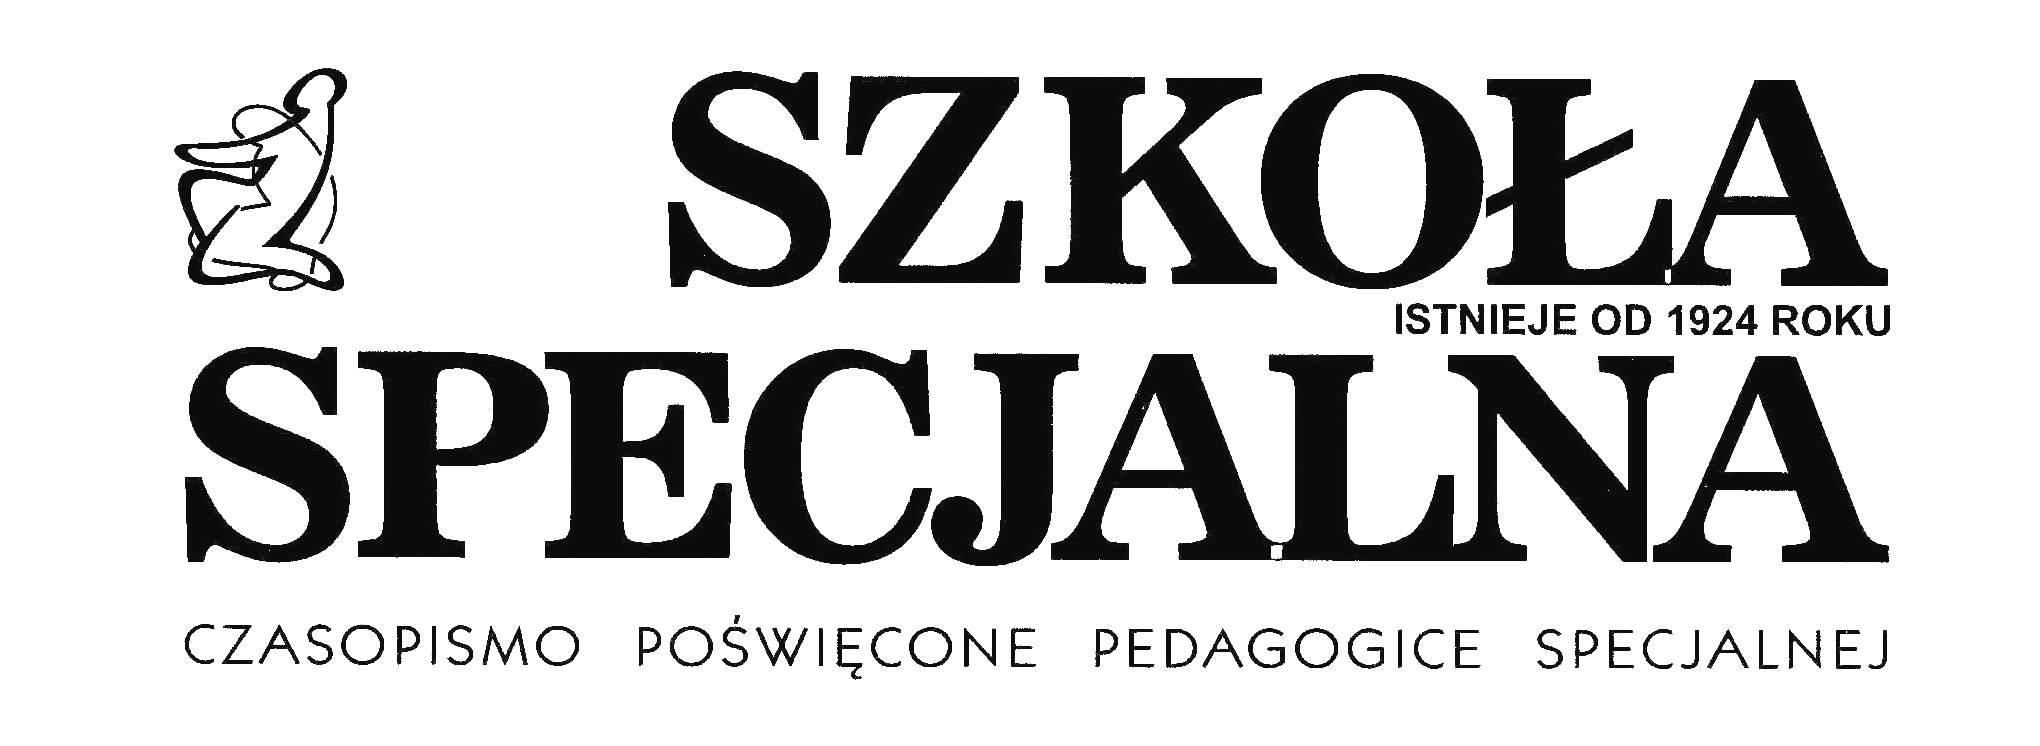 logo czasopisma szkoła specjalna